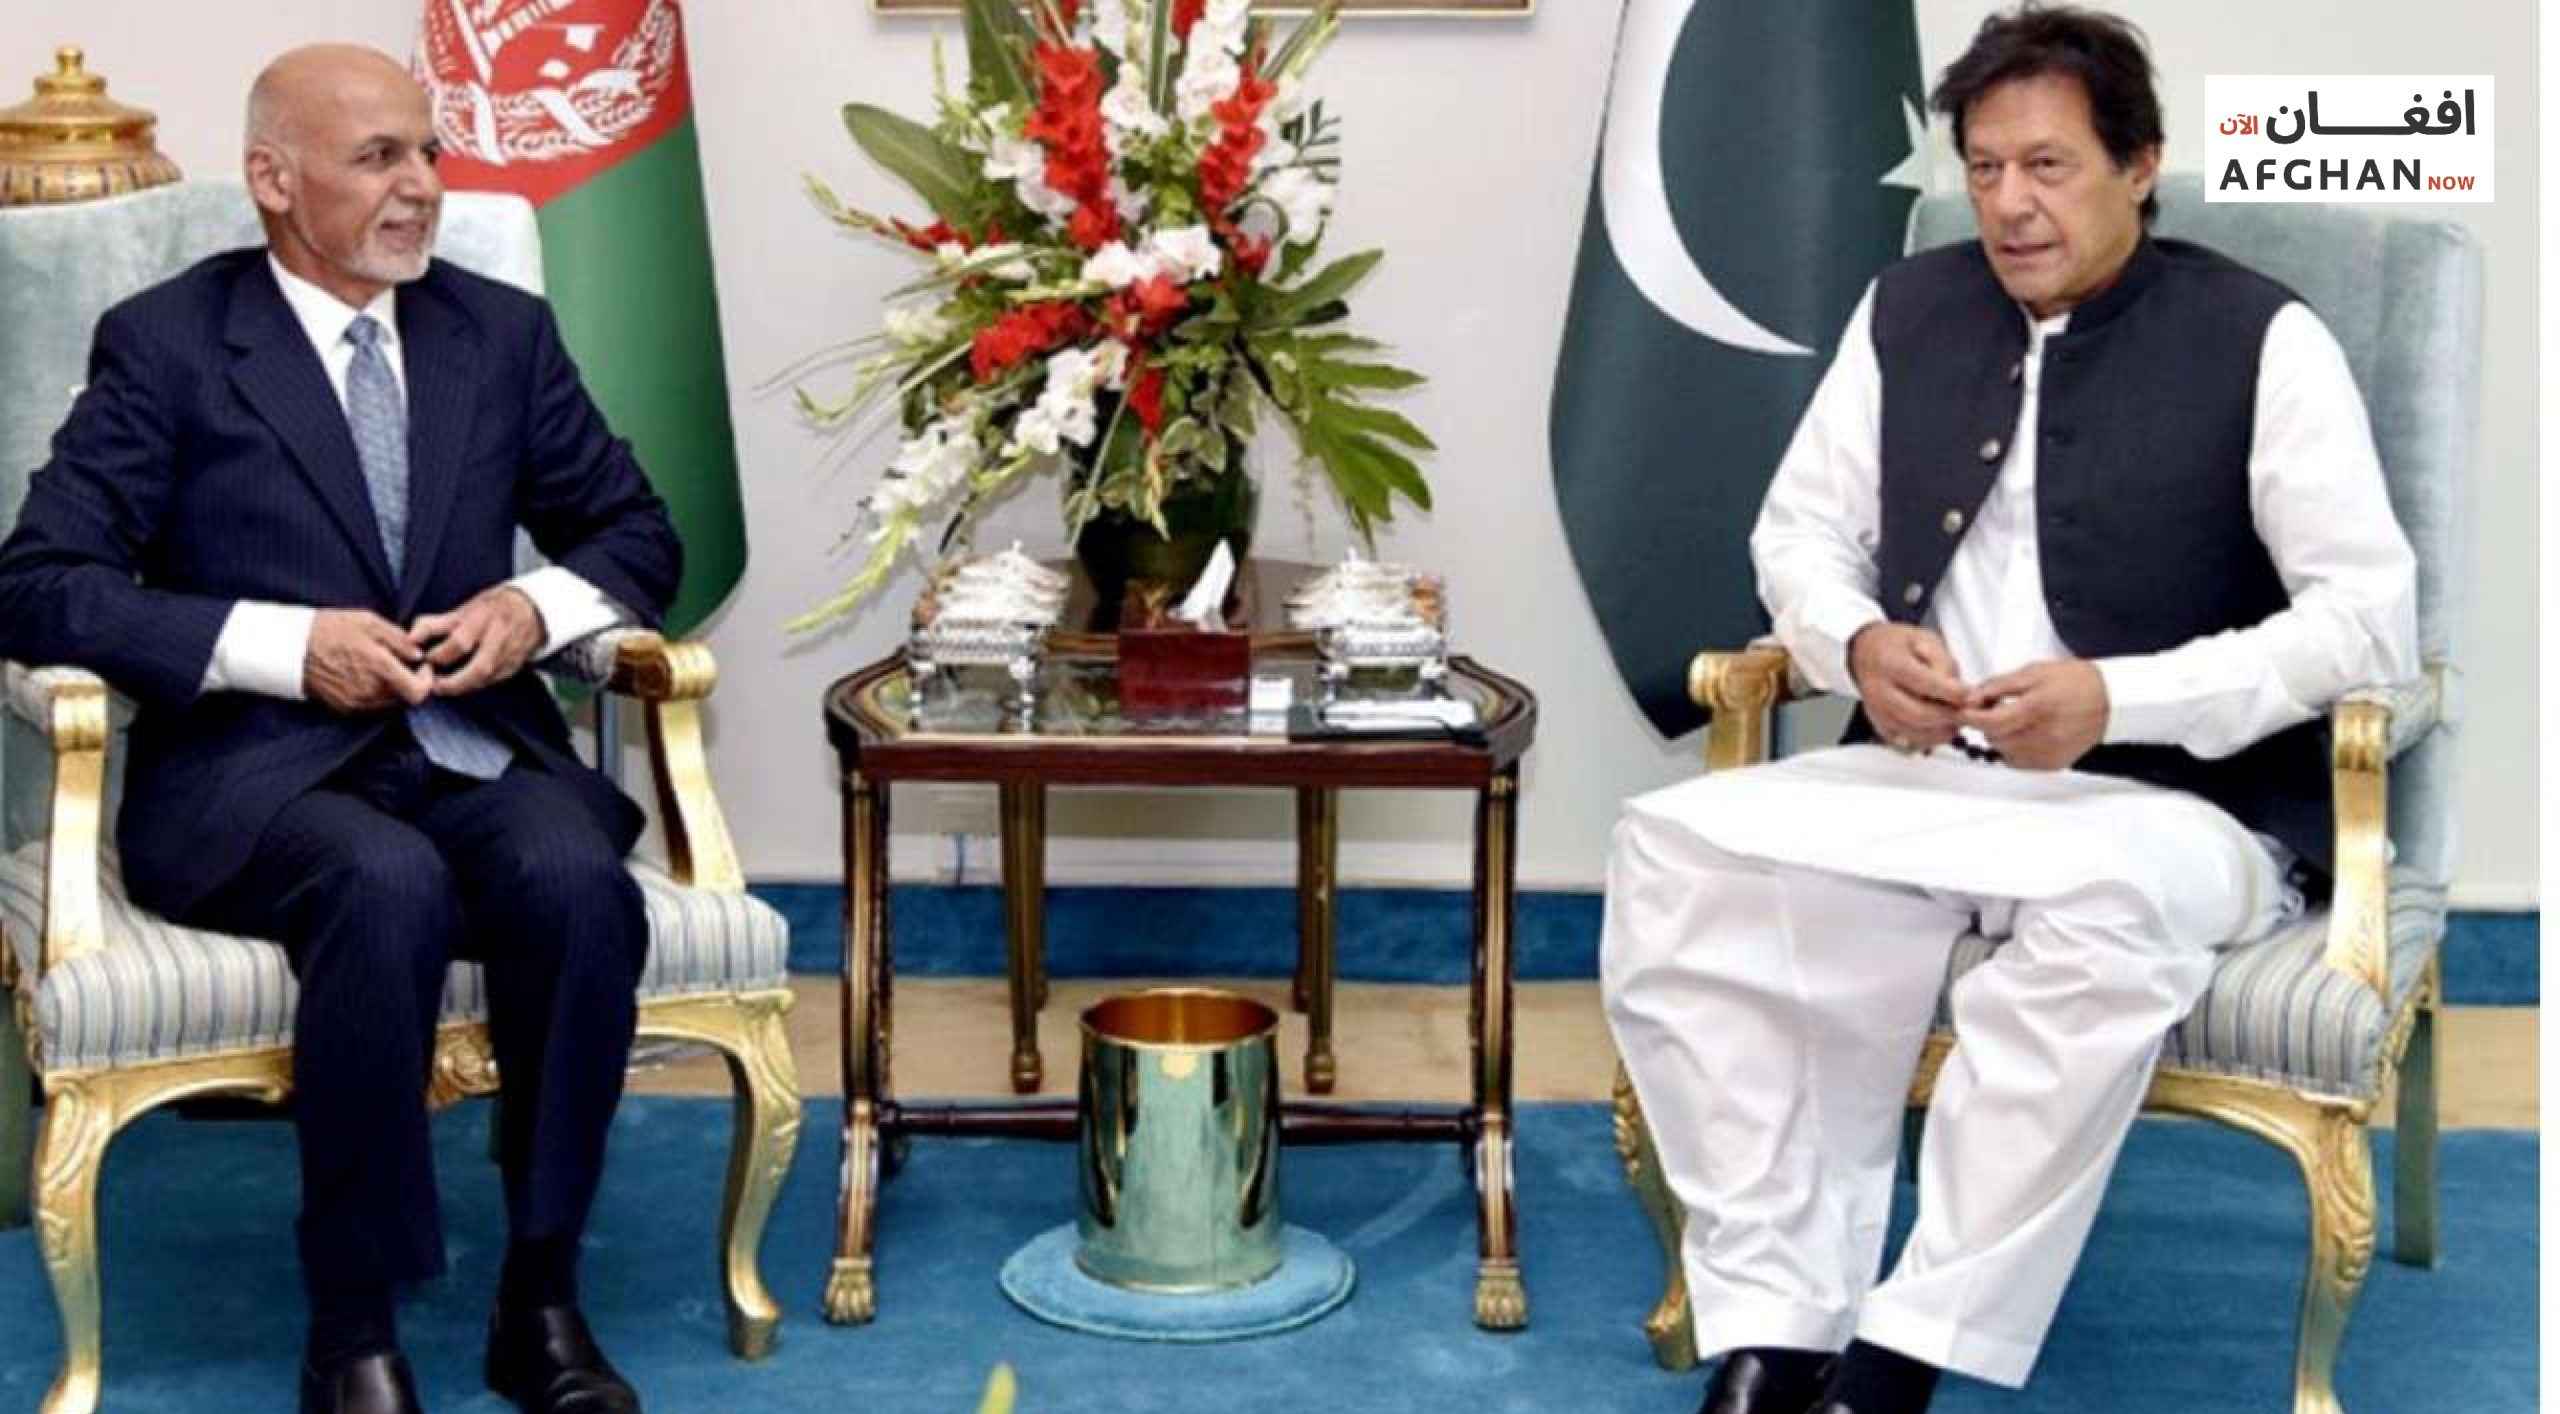 د پاکستان لومړی وزیر عمران خان سبا کابل ته راځي